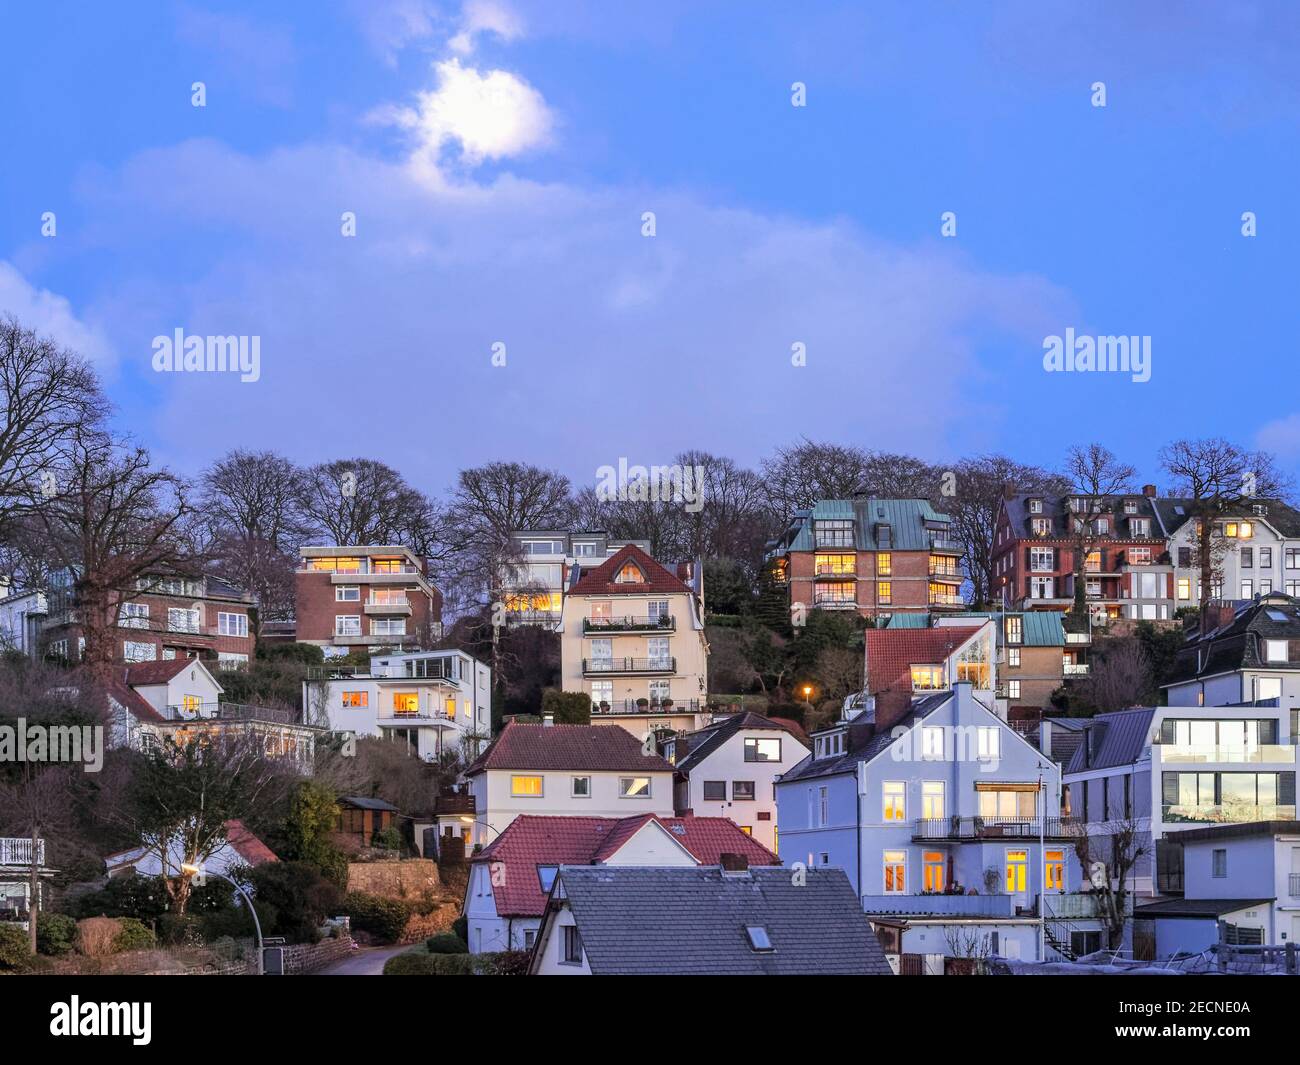 Vollmond, Blaue Stunde im Treppenviertel, Hamburg -Blankenese, Deutschland, Europa Stockfoto